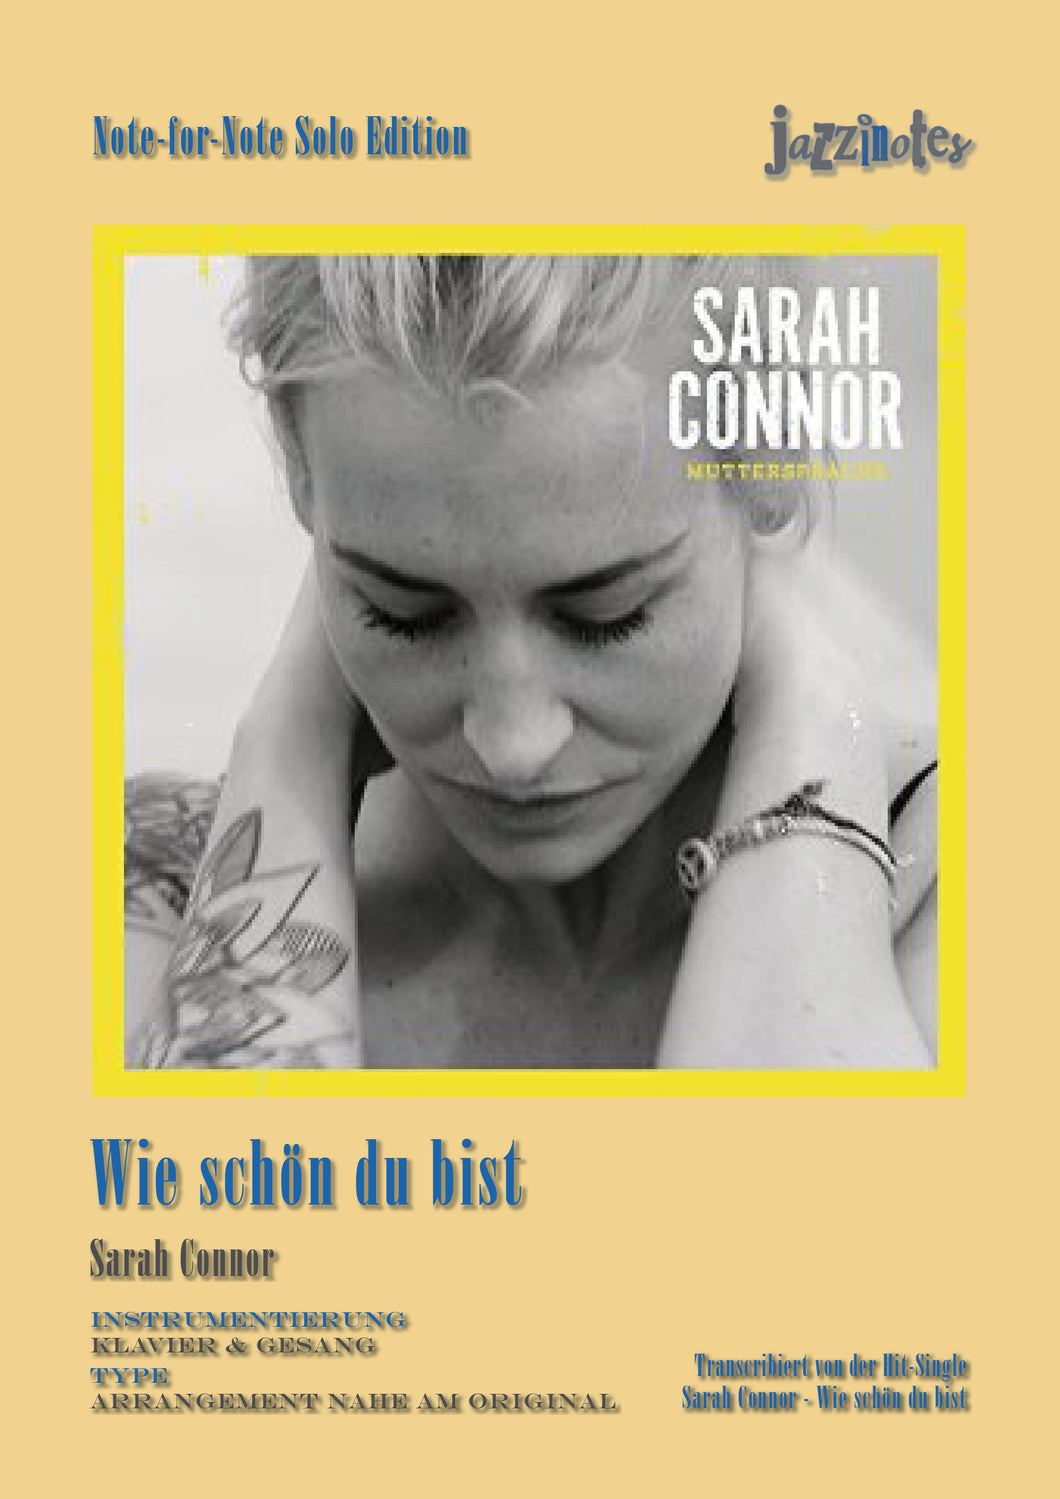 Connor, Sarah: Wie schön du bist - Sheet Music Download